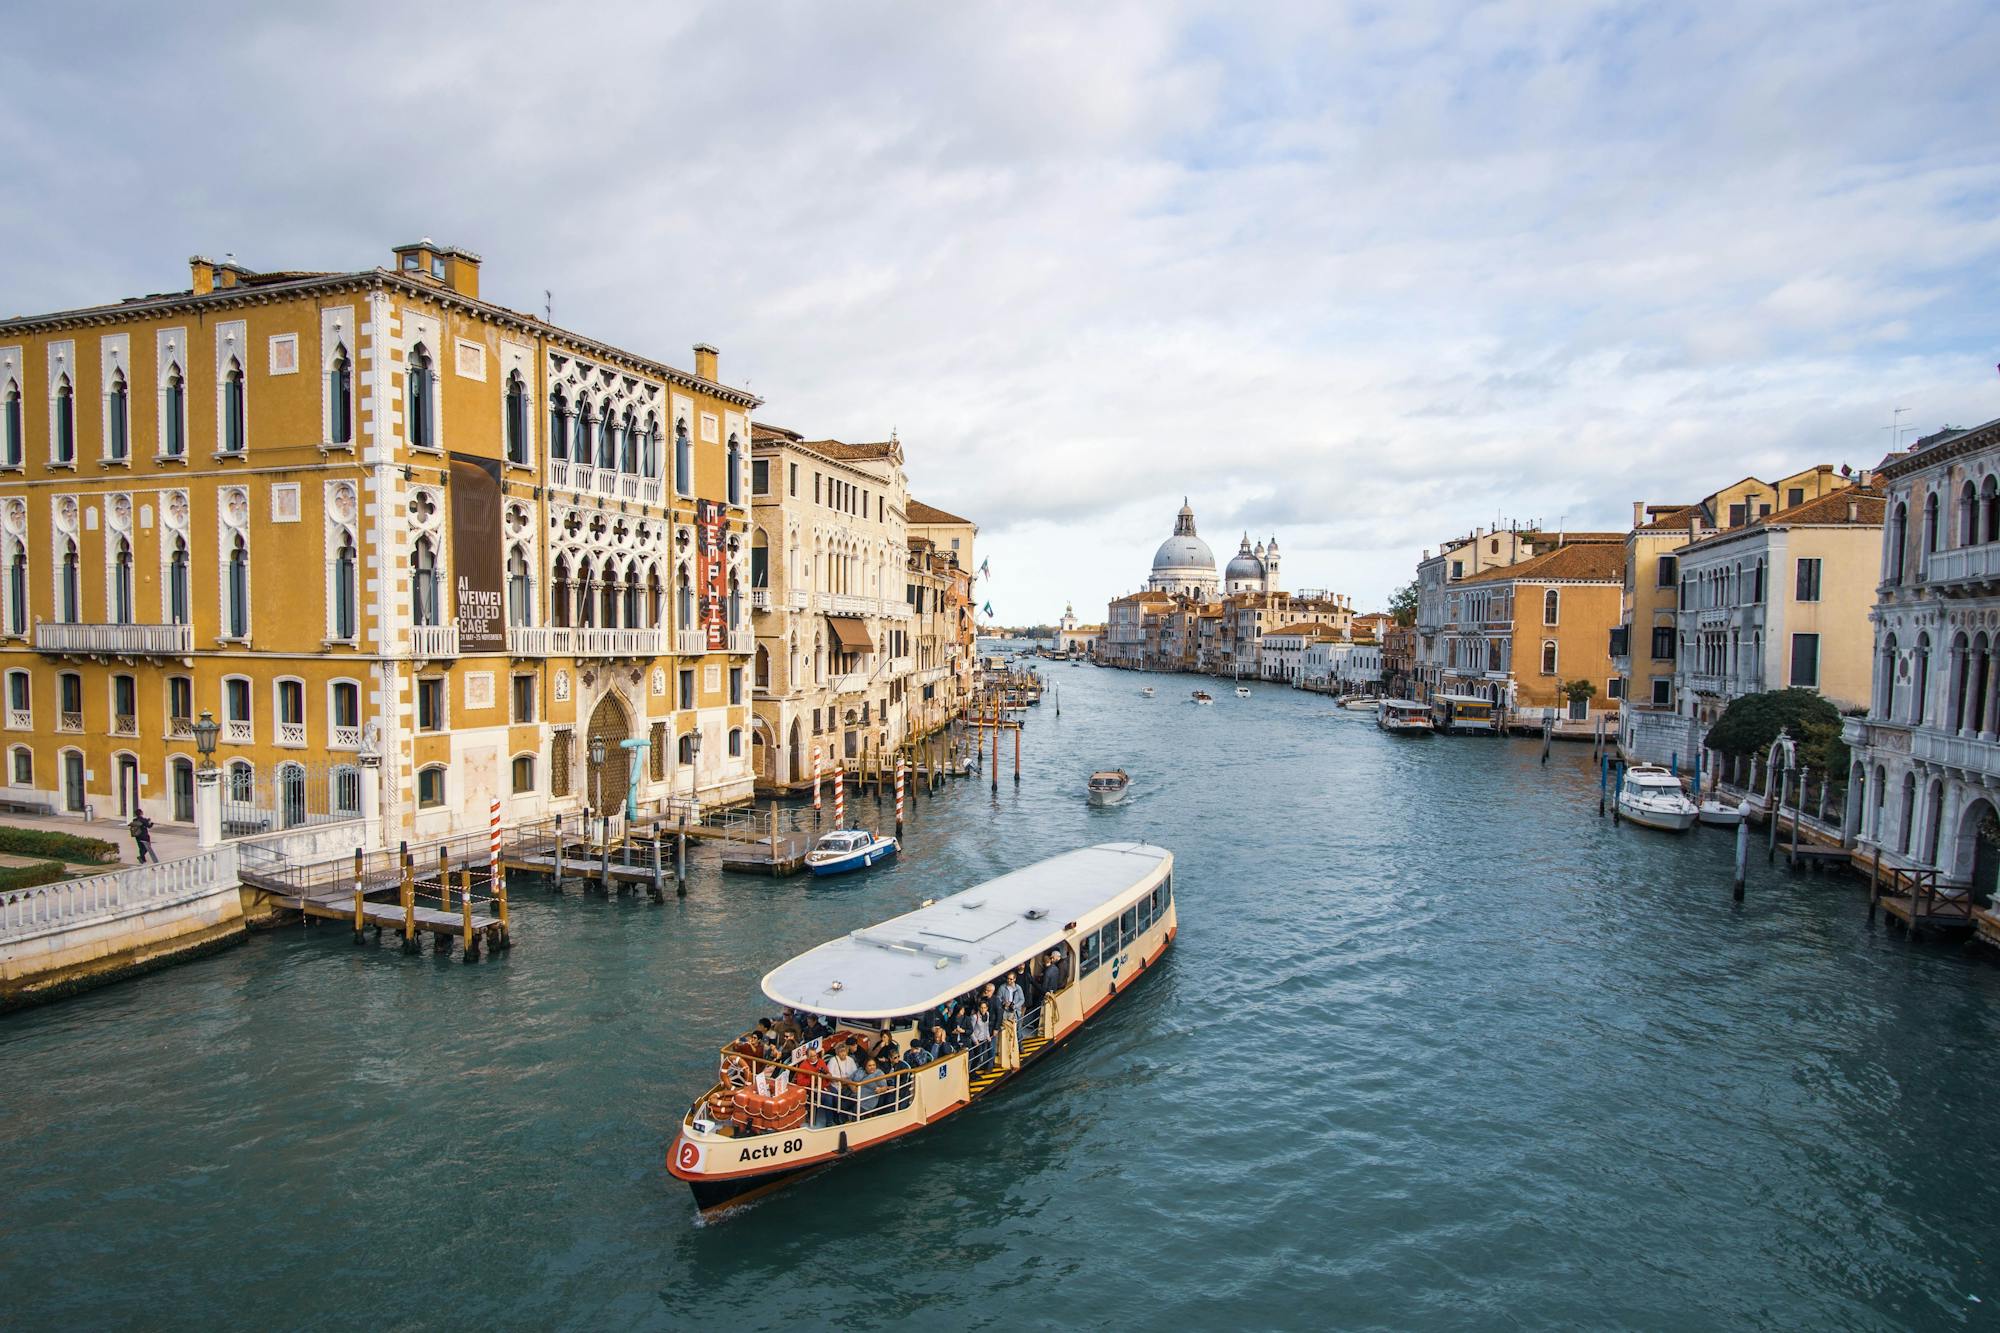 Canal Grande, małe przystanie i piękne włoskie domy wokół. Na pierwszym planie obrazu widoczna jest gondola z licznymi pasażerami.